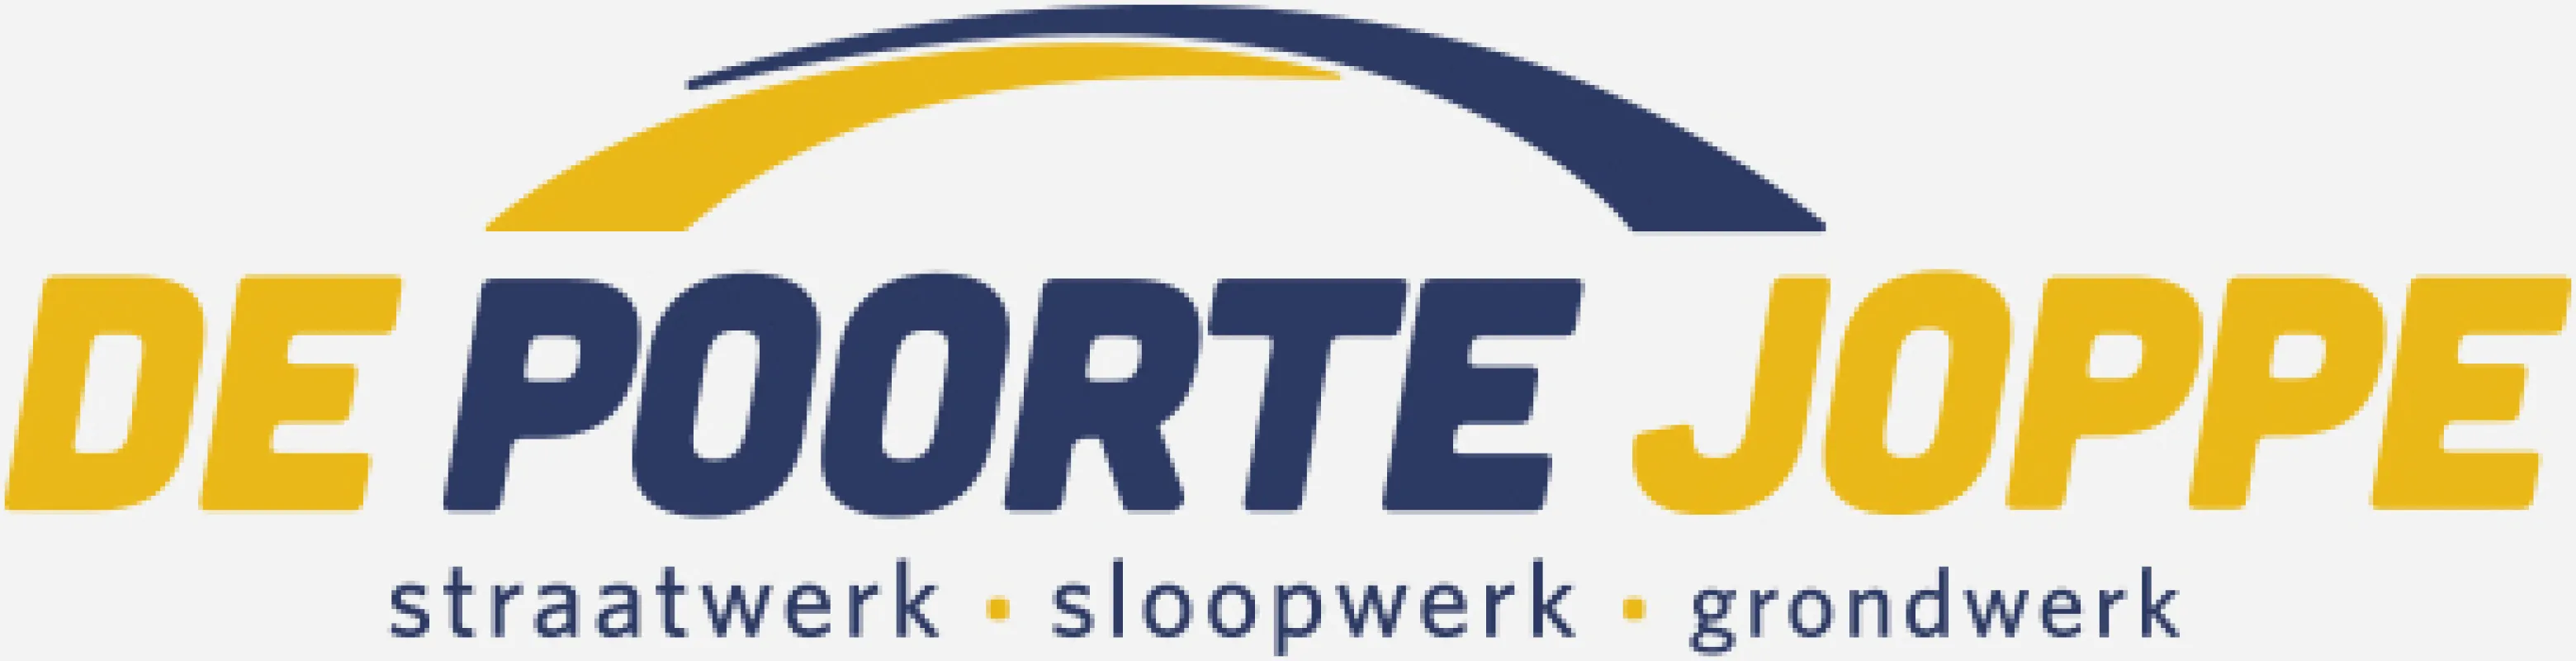 Poorte Joppe logo